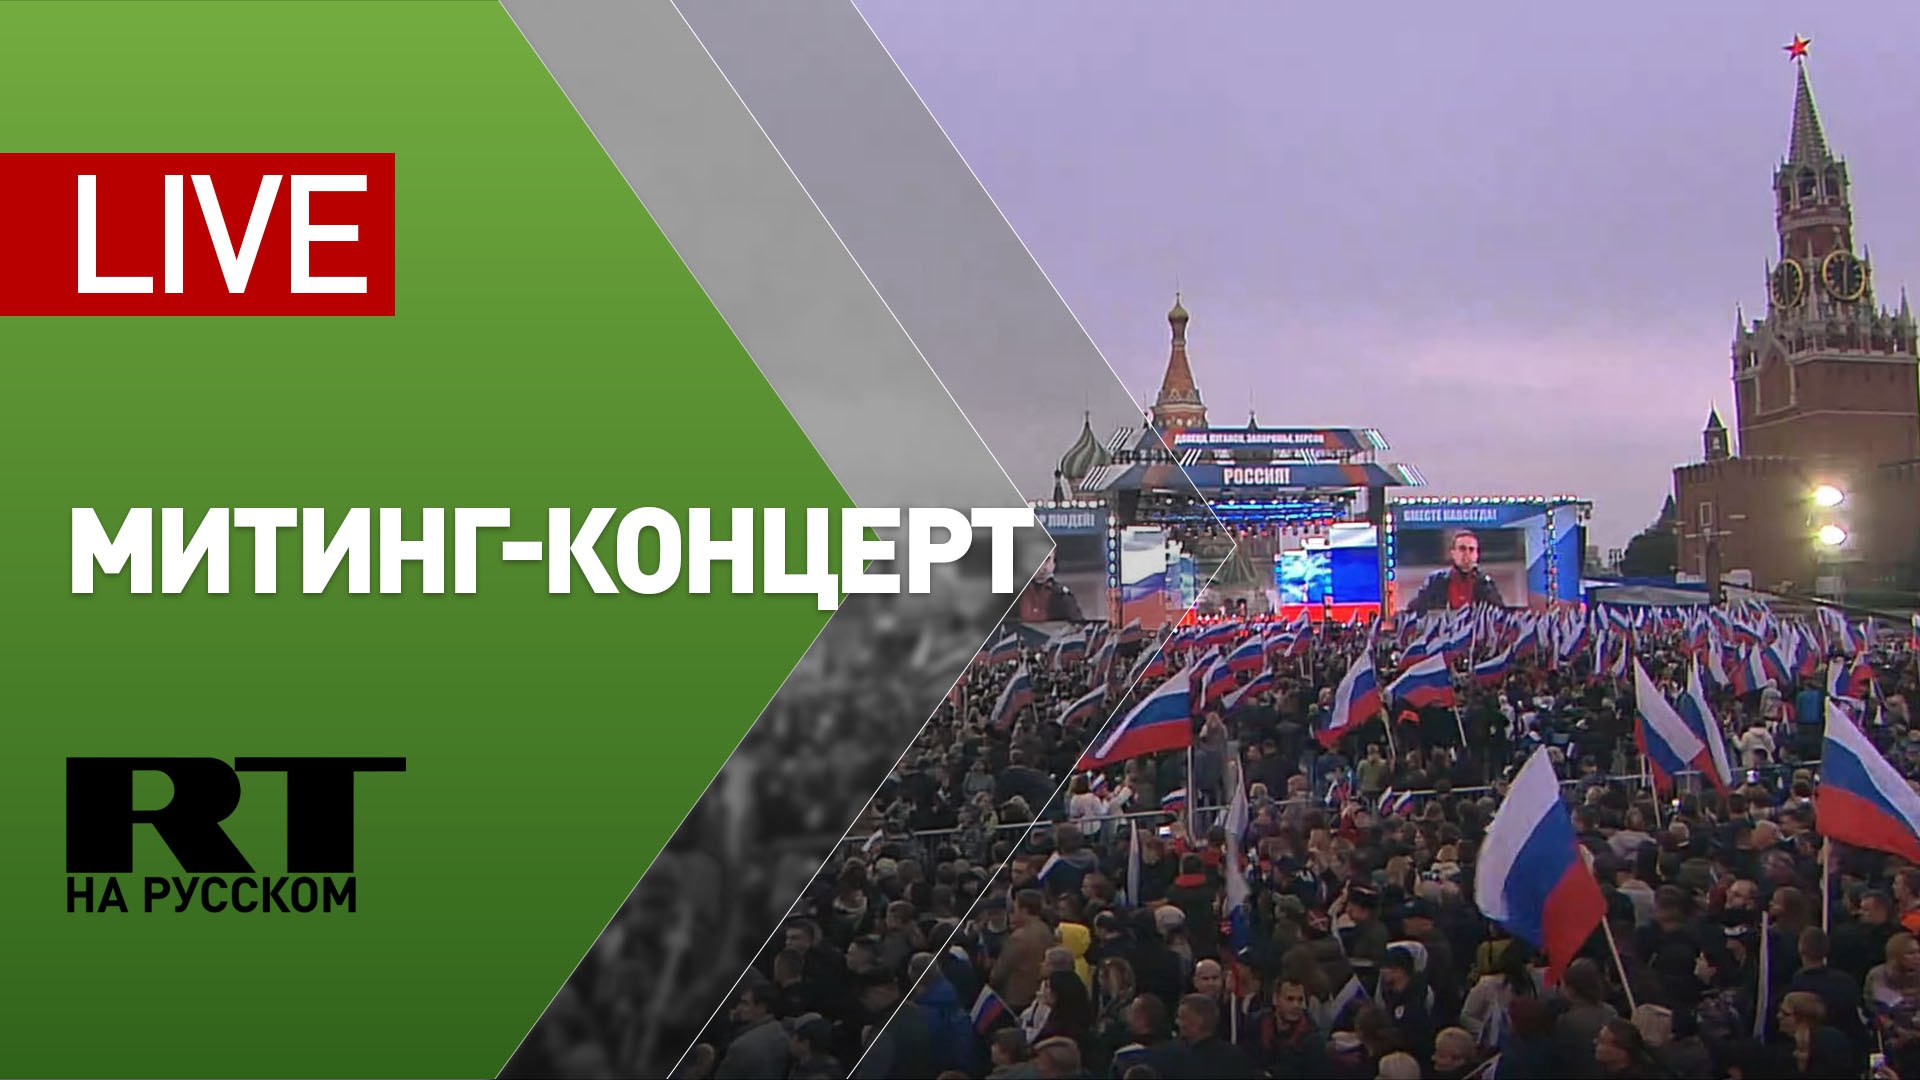 Митинг-концерт в Москве по итогам референдумов — LIVE